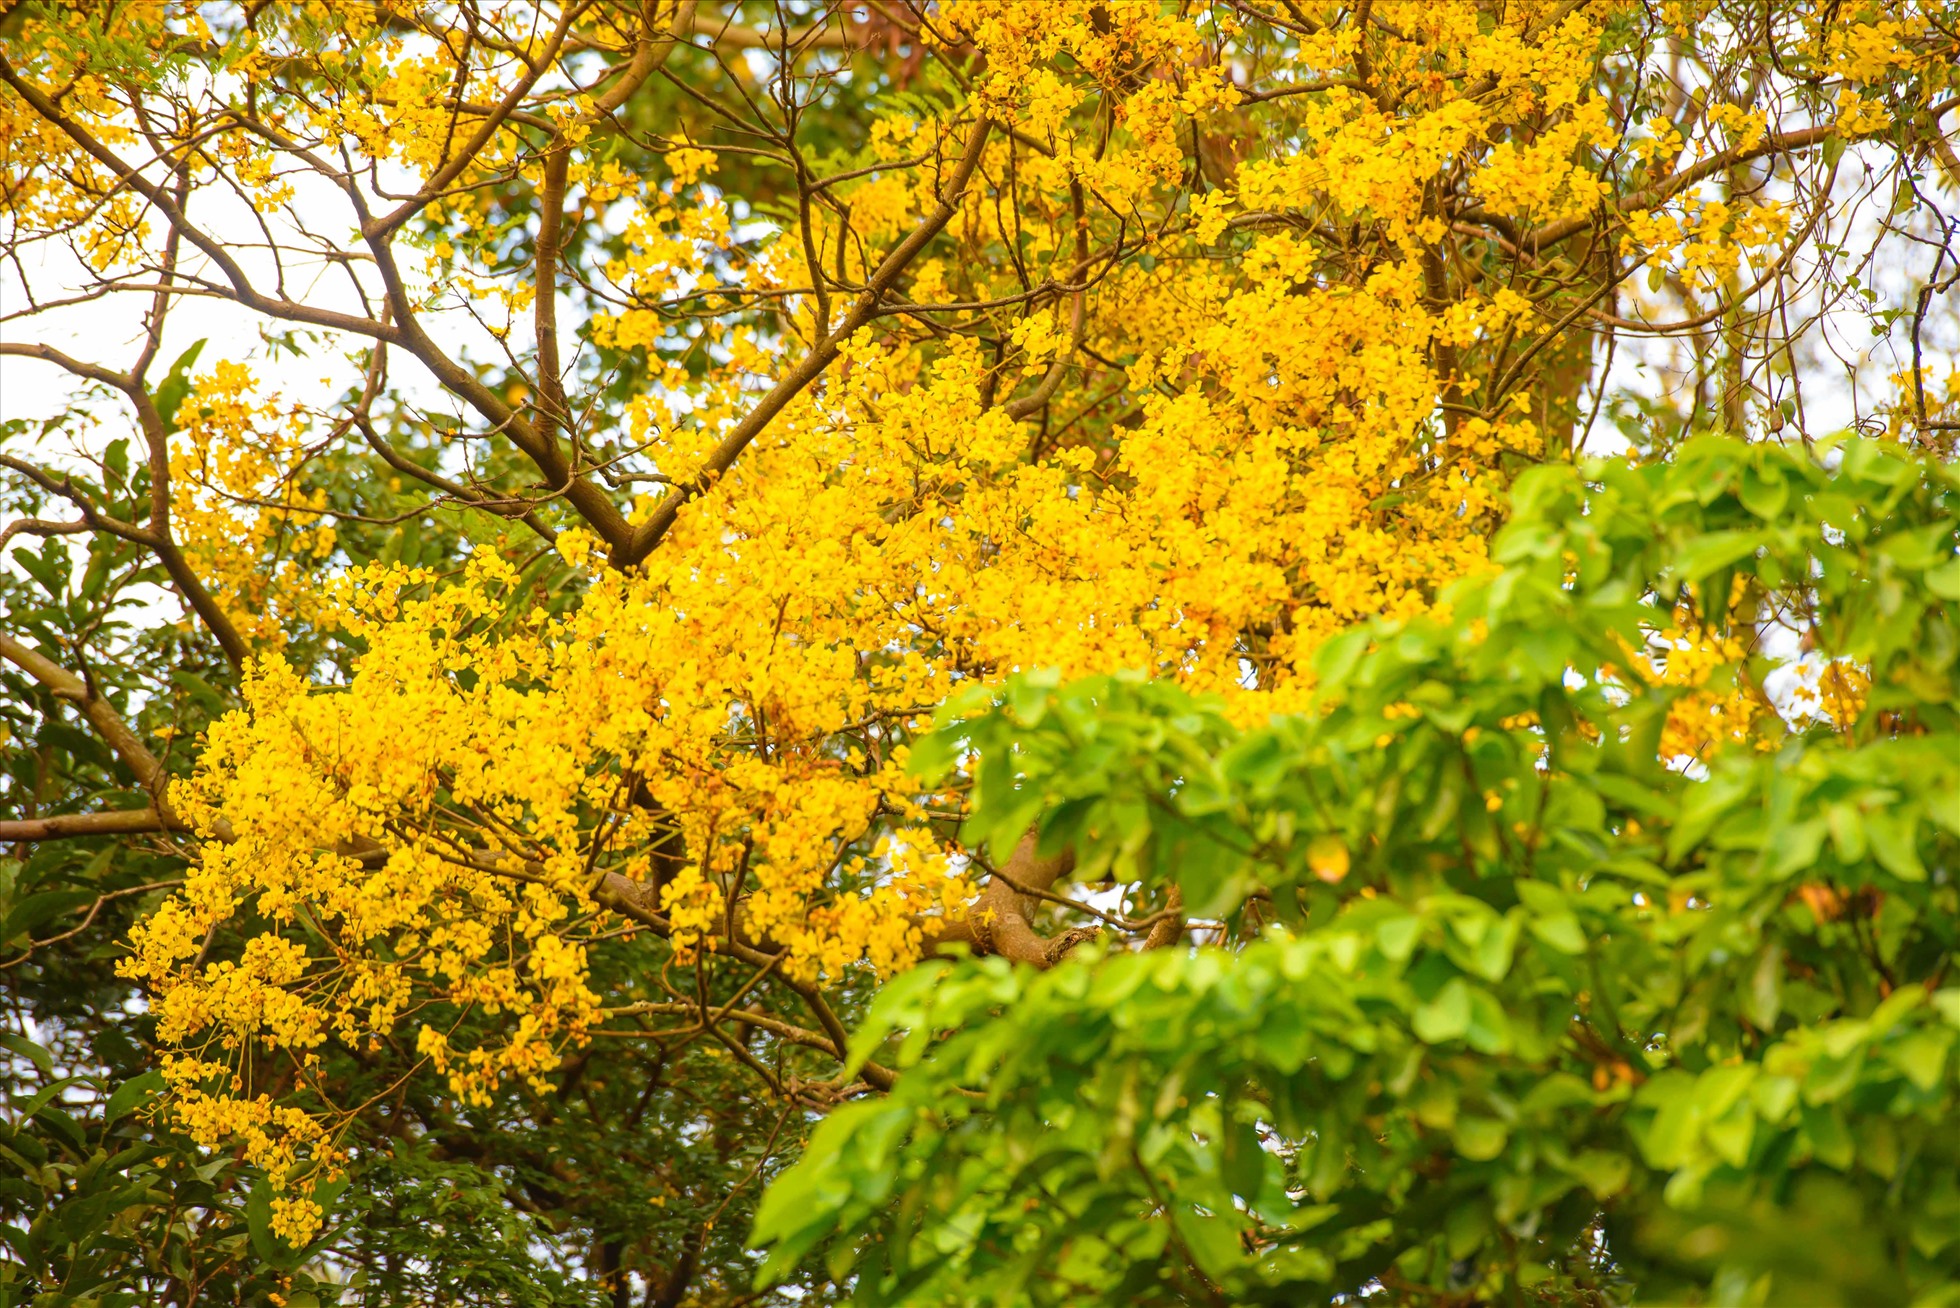 Hoa lim xẹt (hay còn gọi là điệp, muồng kim phượng, phượng vàng) ở bán đảo Sơn Trà thường bắt đầu nở vào cuối tháng Ba và kéo dài đến tận tháng Sáu.